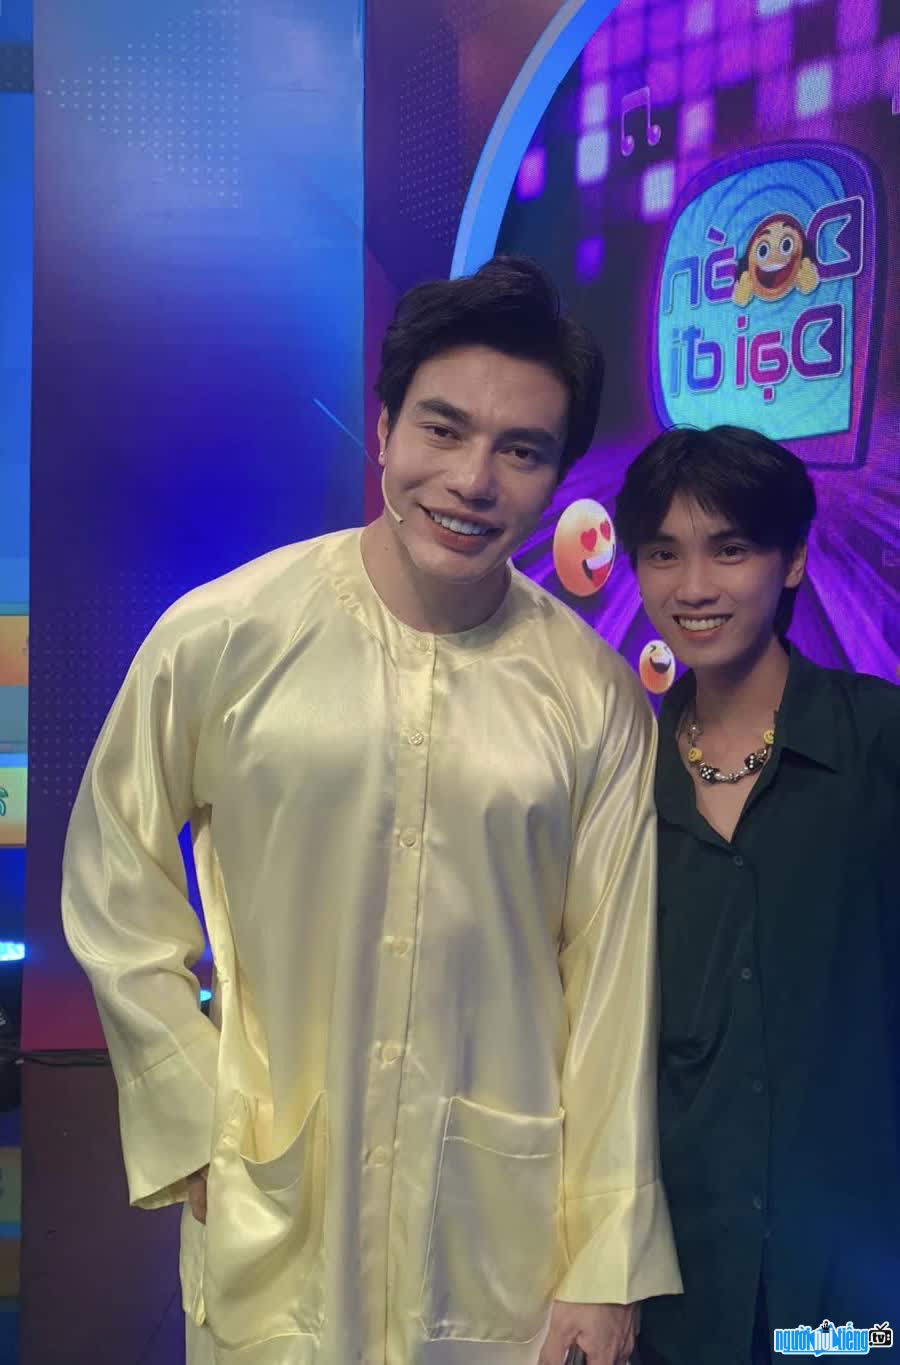 KOL Duong Kien Hao's picture taken with his idol